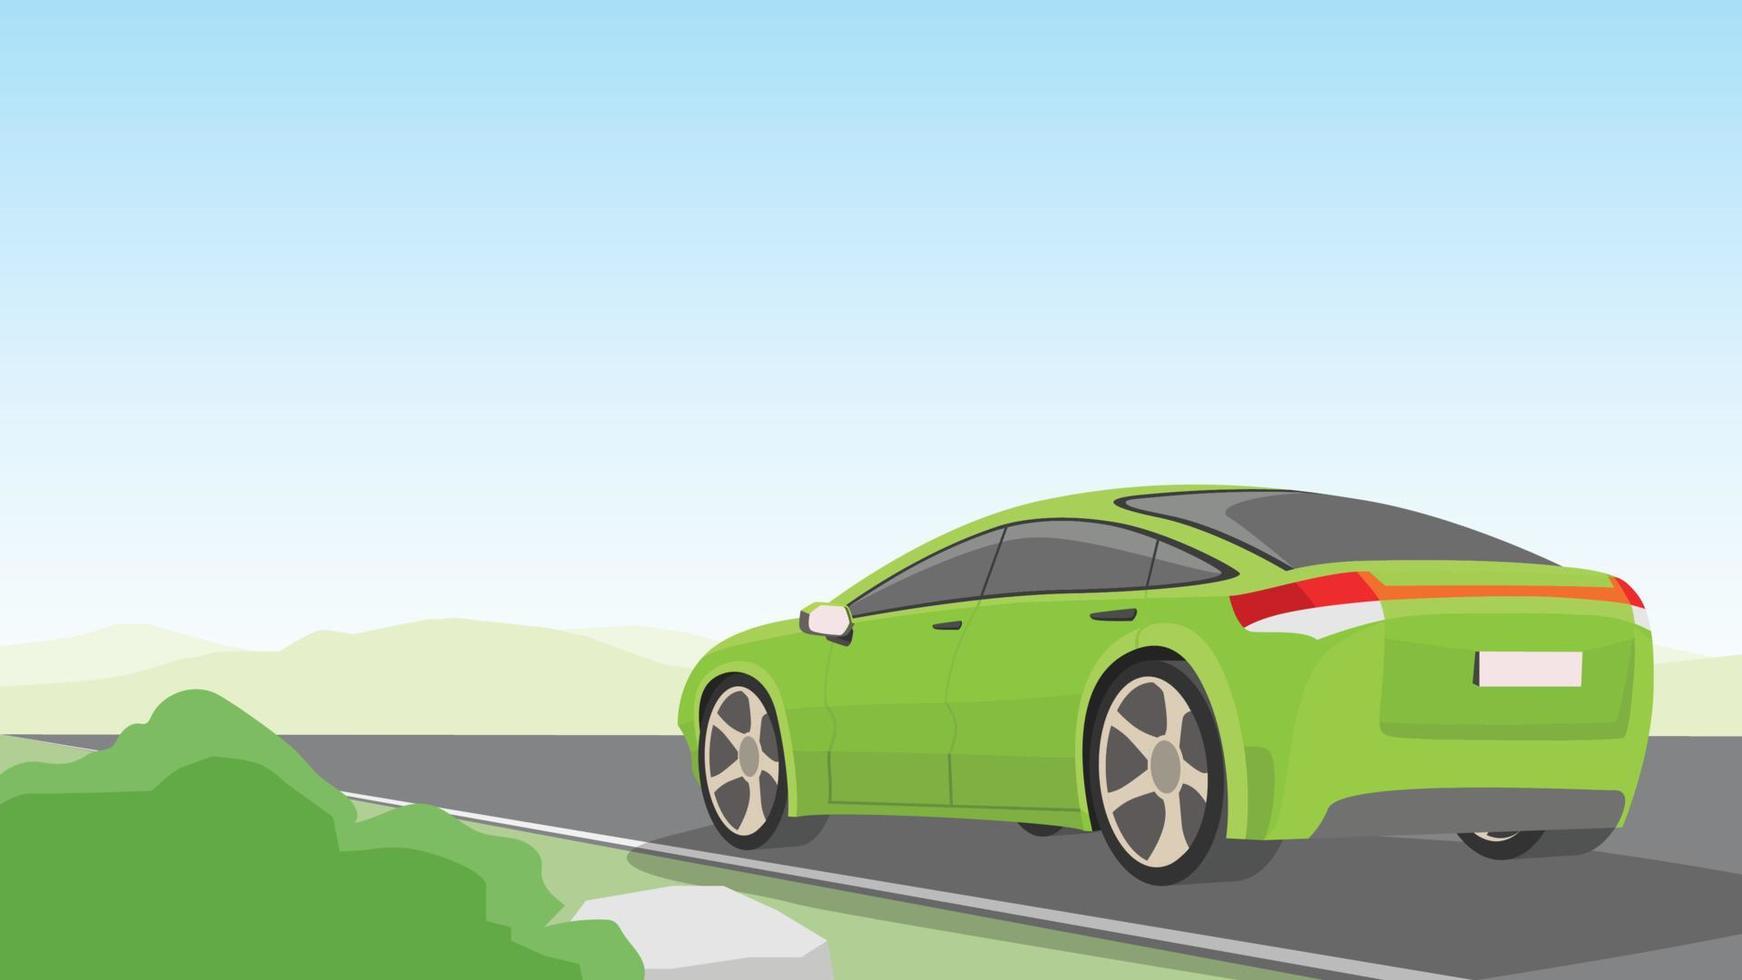 paisaje de dibujos animados vectoriales de carretera asfaltada en campo abierto. el coche de pasajeros verde avanza. fondo de montañas bajo un cielo azul con espacio libre. y capas separadas. vector